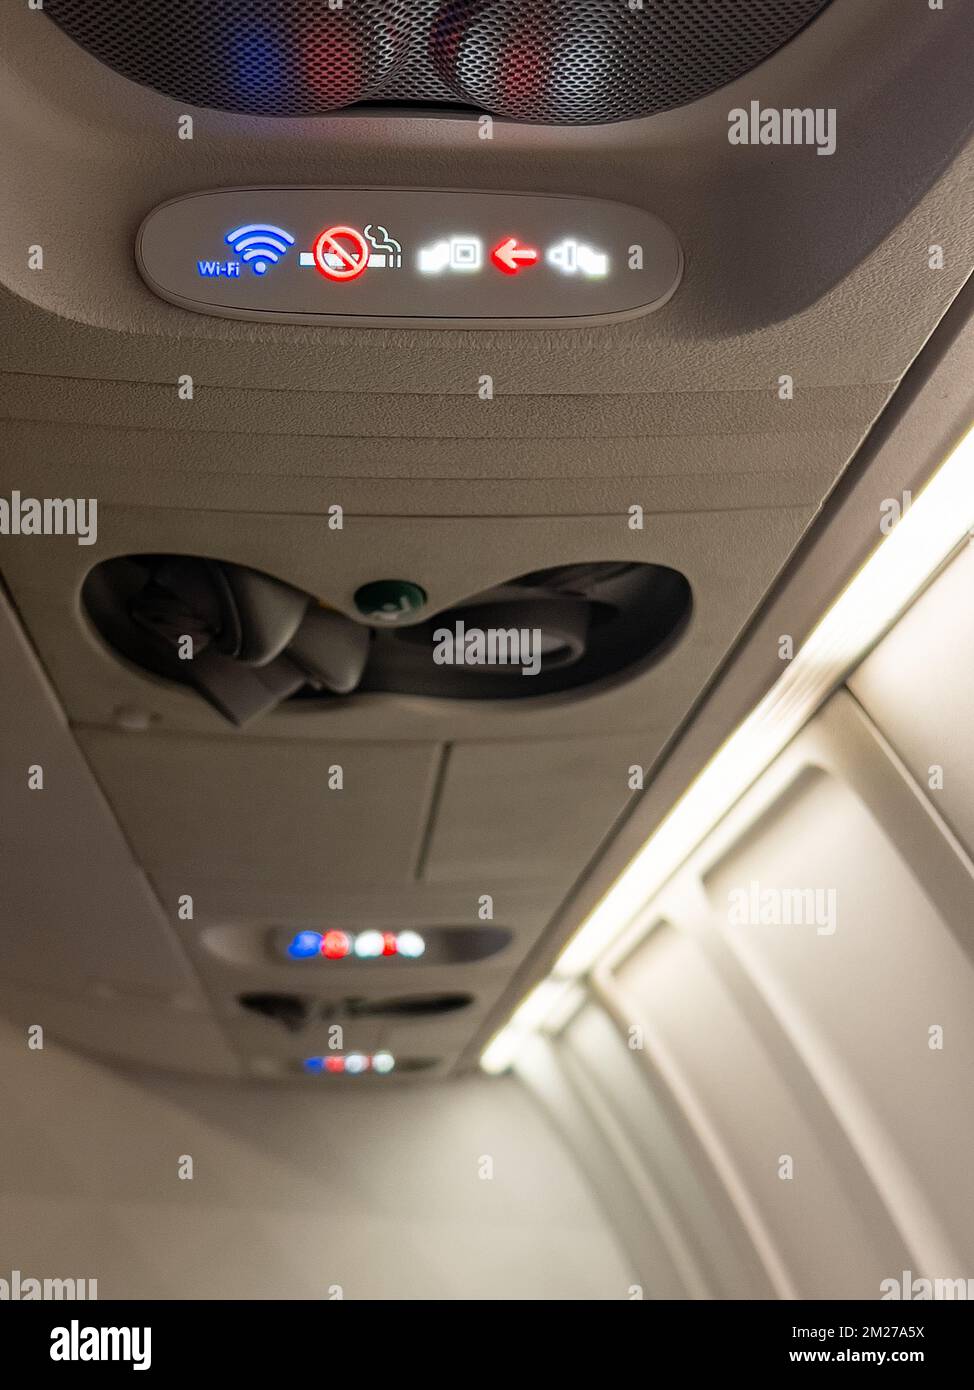 Témoins lumineux dans la cabine d'avion pour le wi-fi, l'interdiction de fumer et les ceintures de sécurité. Banque D'Images